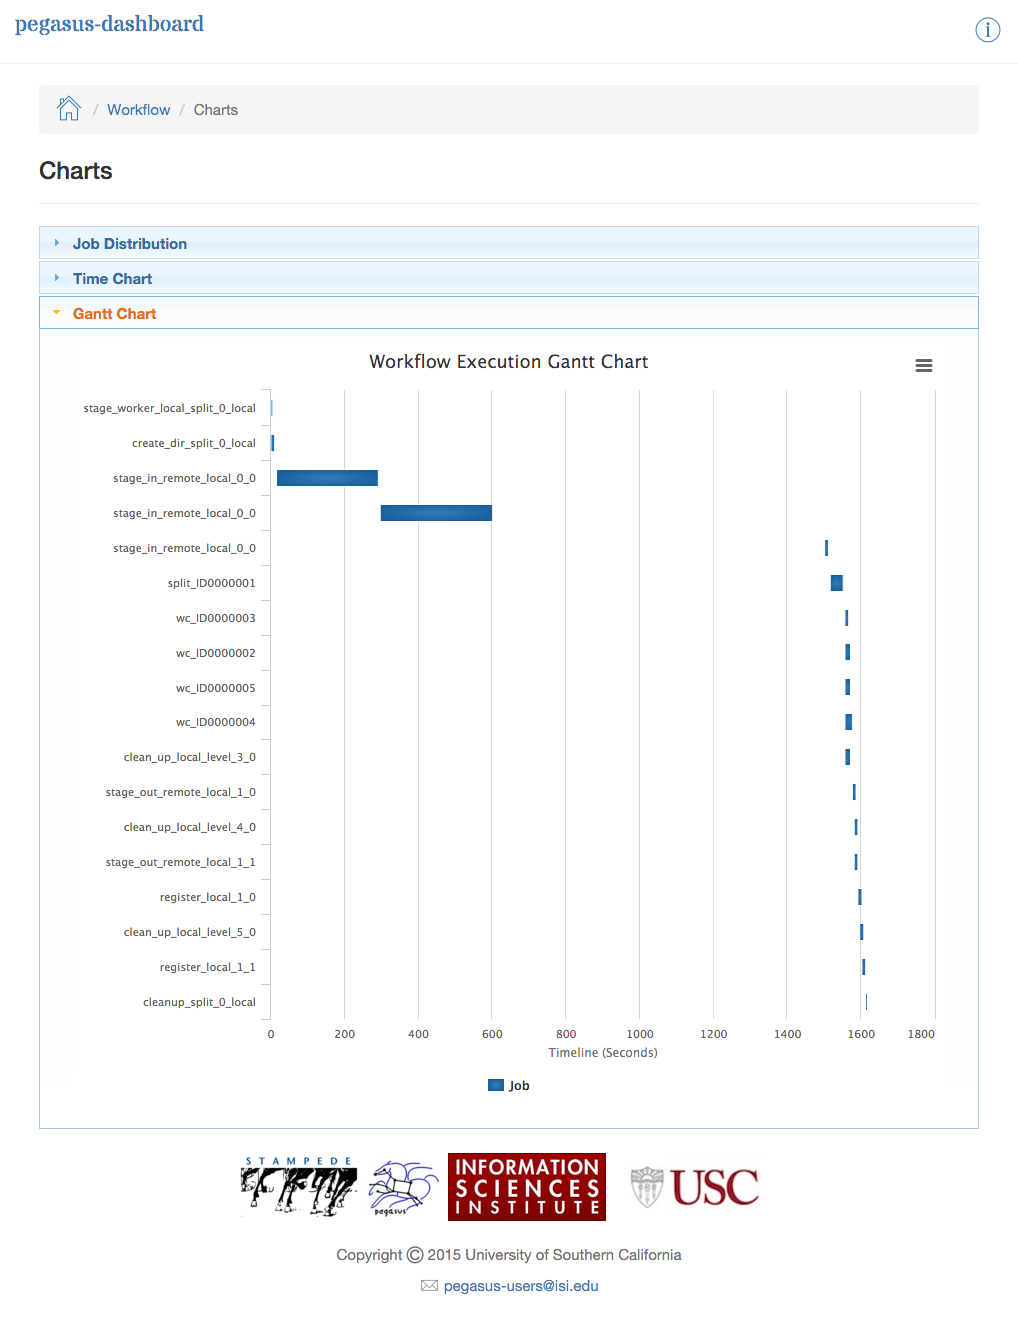 Dashboard Plots - Workflow Gantt Chart